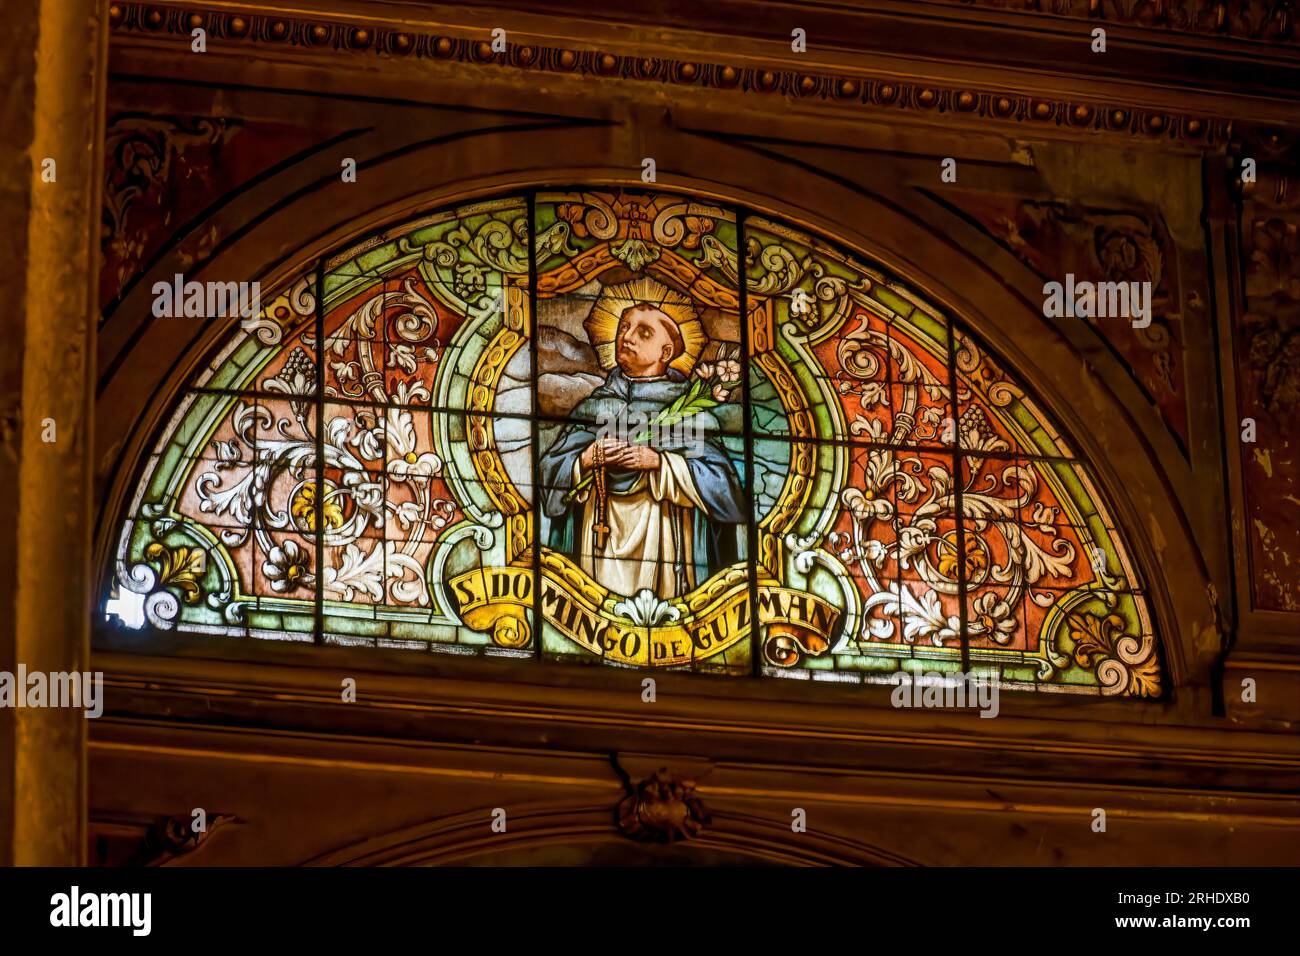 Un vitrail de Santo Domingo ou St. Dominique dans la cathédrale métropolitaine de Santiago à Santiago, Chili. Banque D'Images